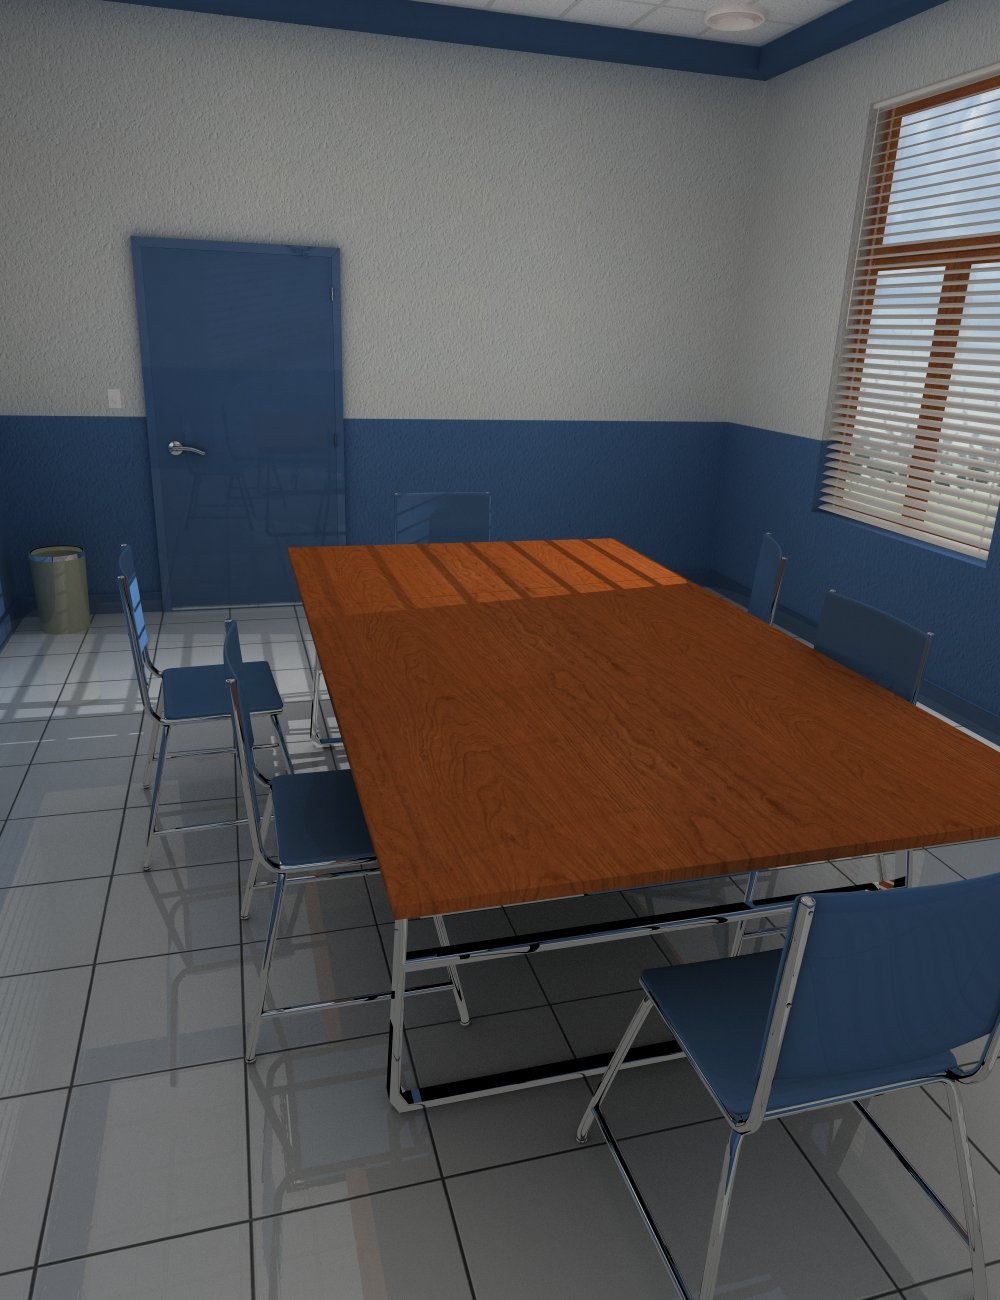 Teacher Meeting Room by: , 3D Models by Daz 3D